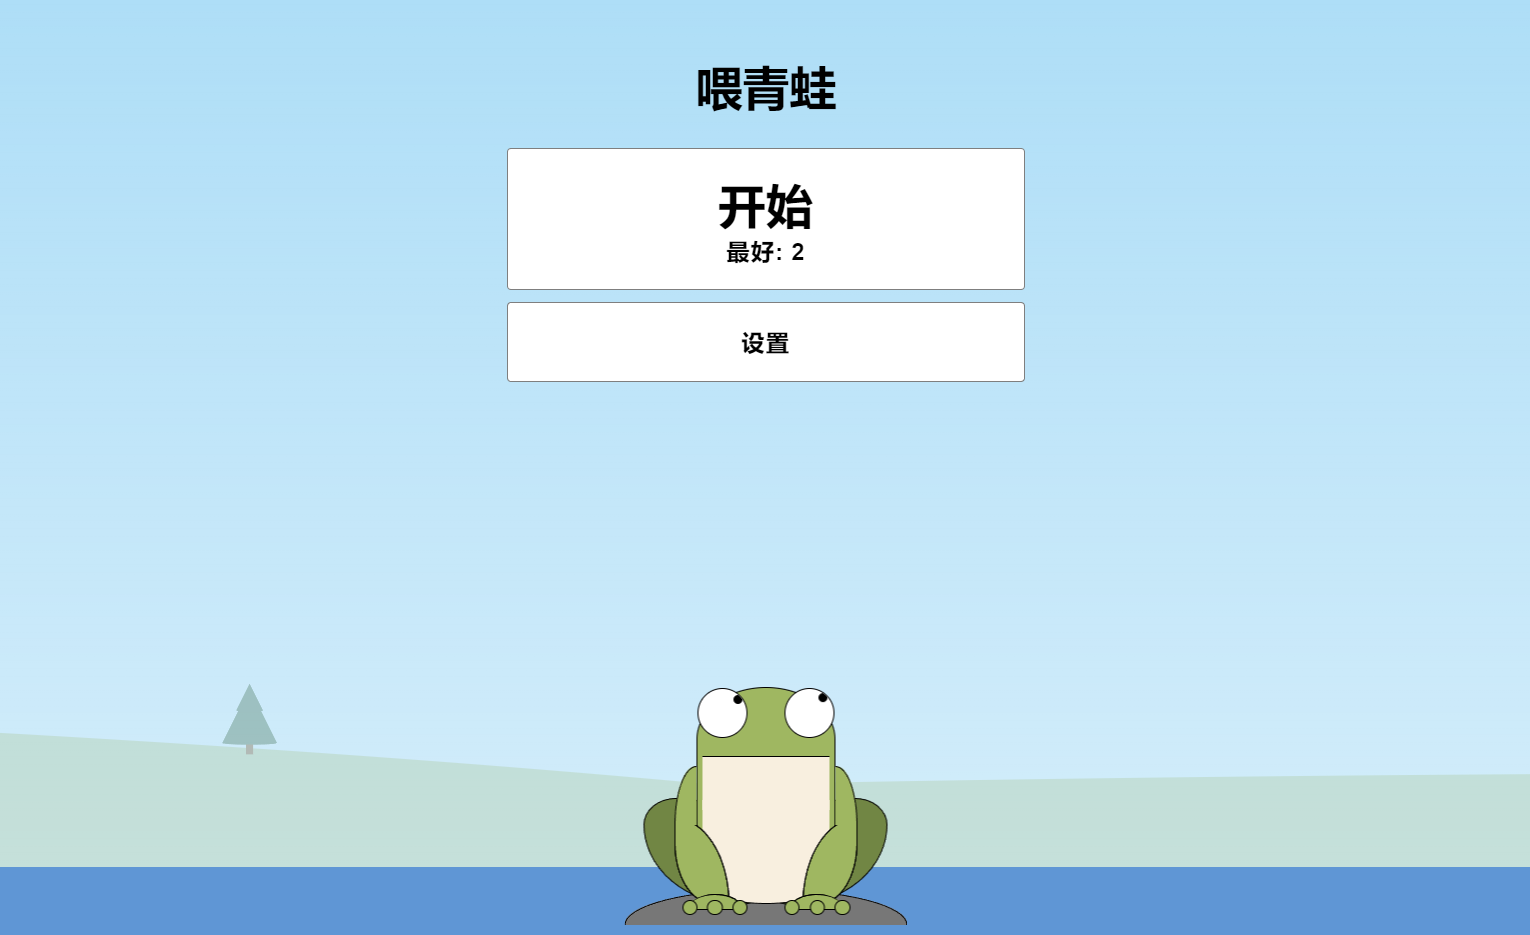 青蛙吃蚊子小游戏html源码自适应手机端 第2张插图